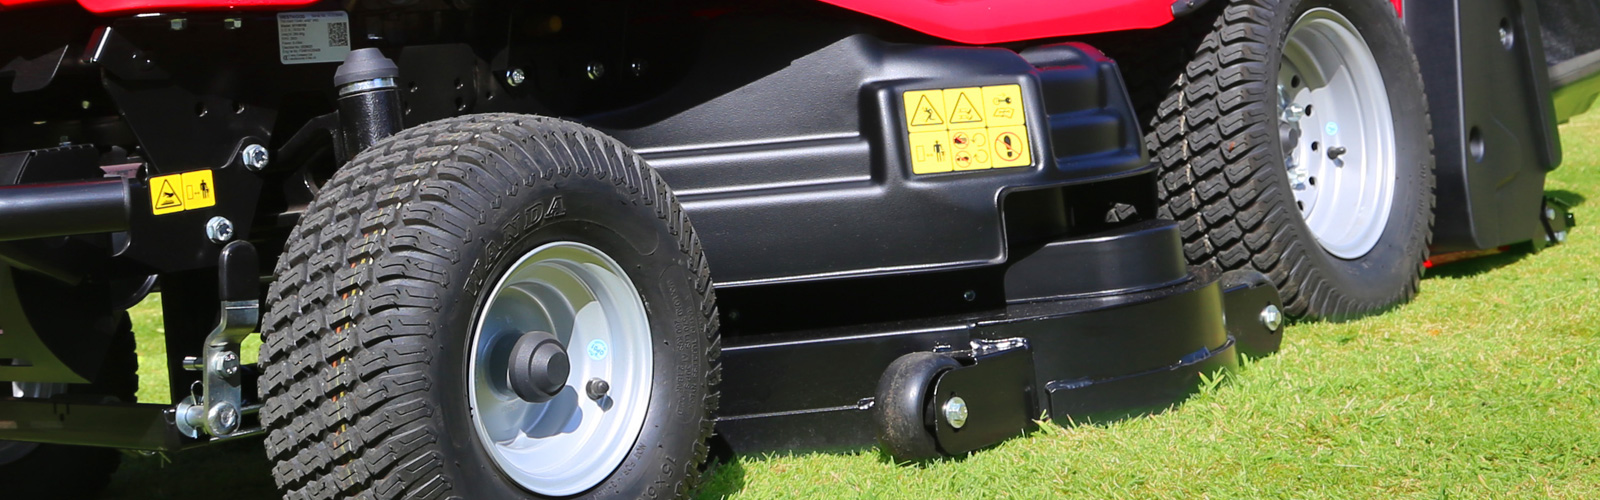 Countax Countax lawn garden tractor mower xrd rear discharge cutter deck